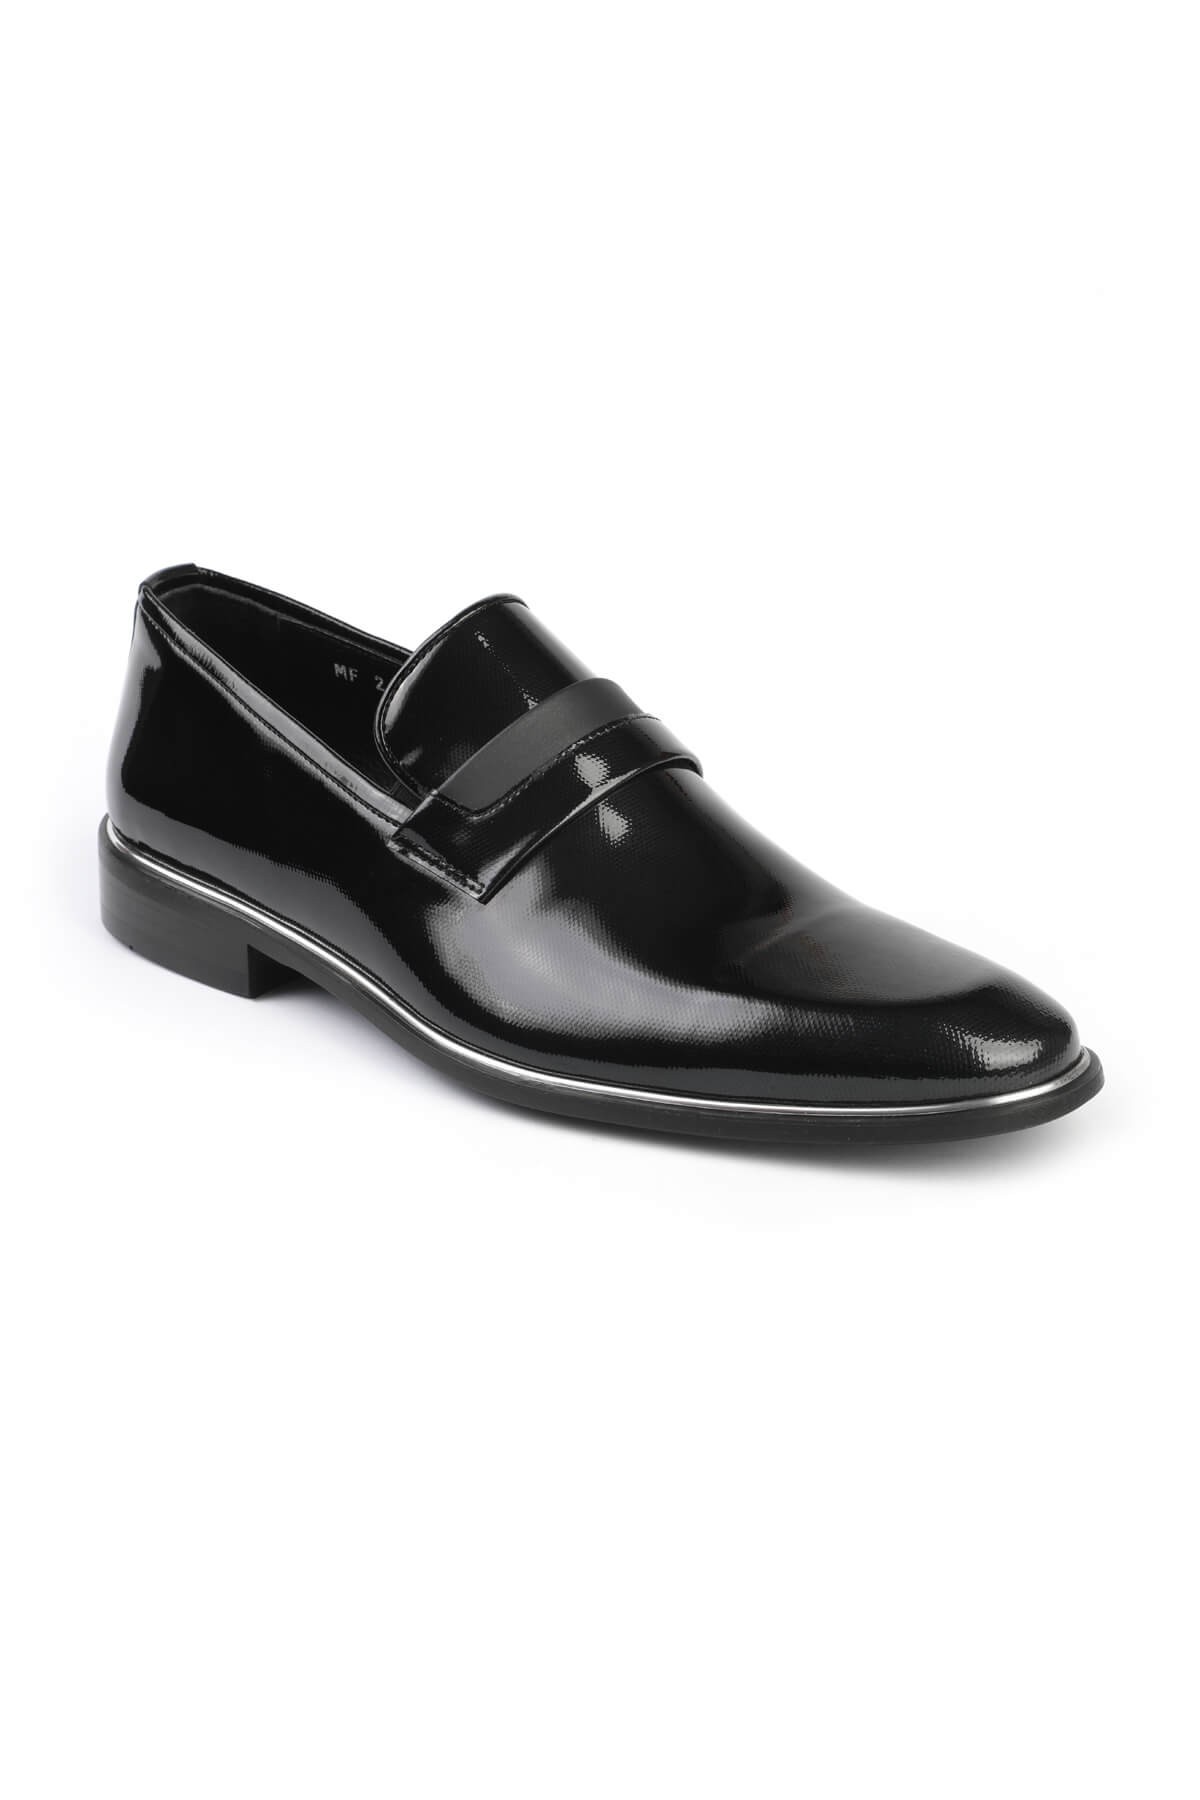 Libero 2602 Klasik Erkek Ayakkabı LACİVERT - Siyah